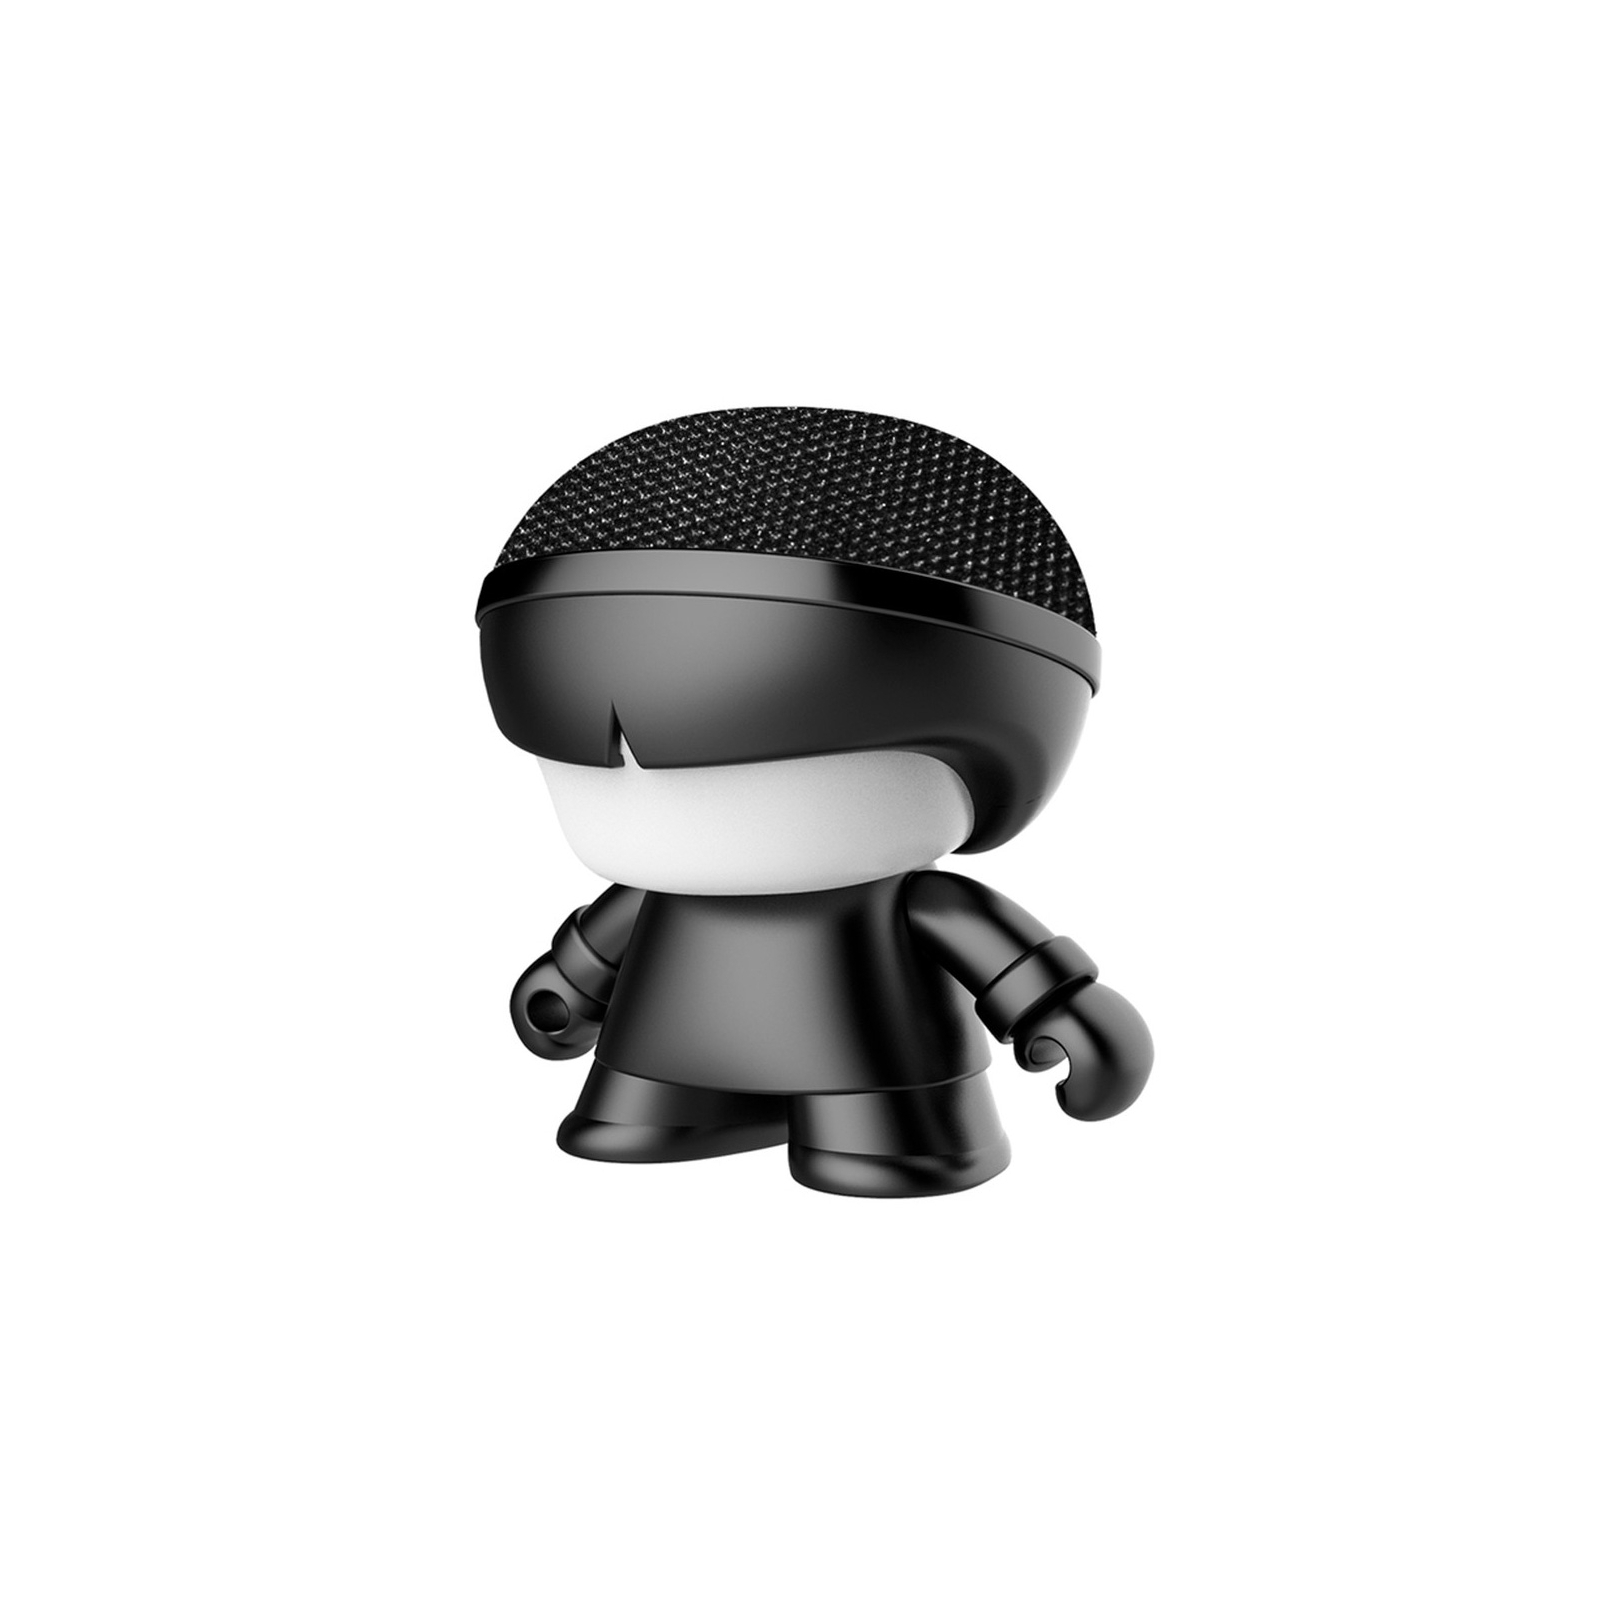 Інтерактивна іграшка Xoopar Акустична система Mini Xboy Black (XBOY81001.21М)